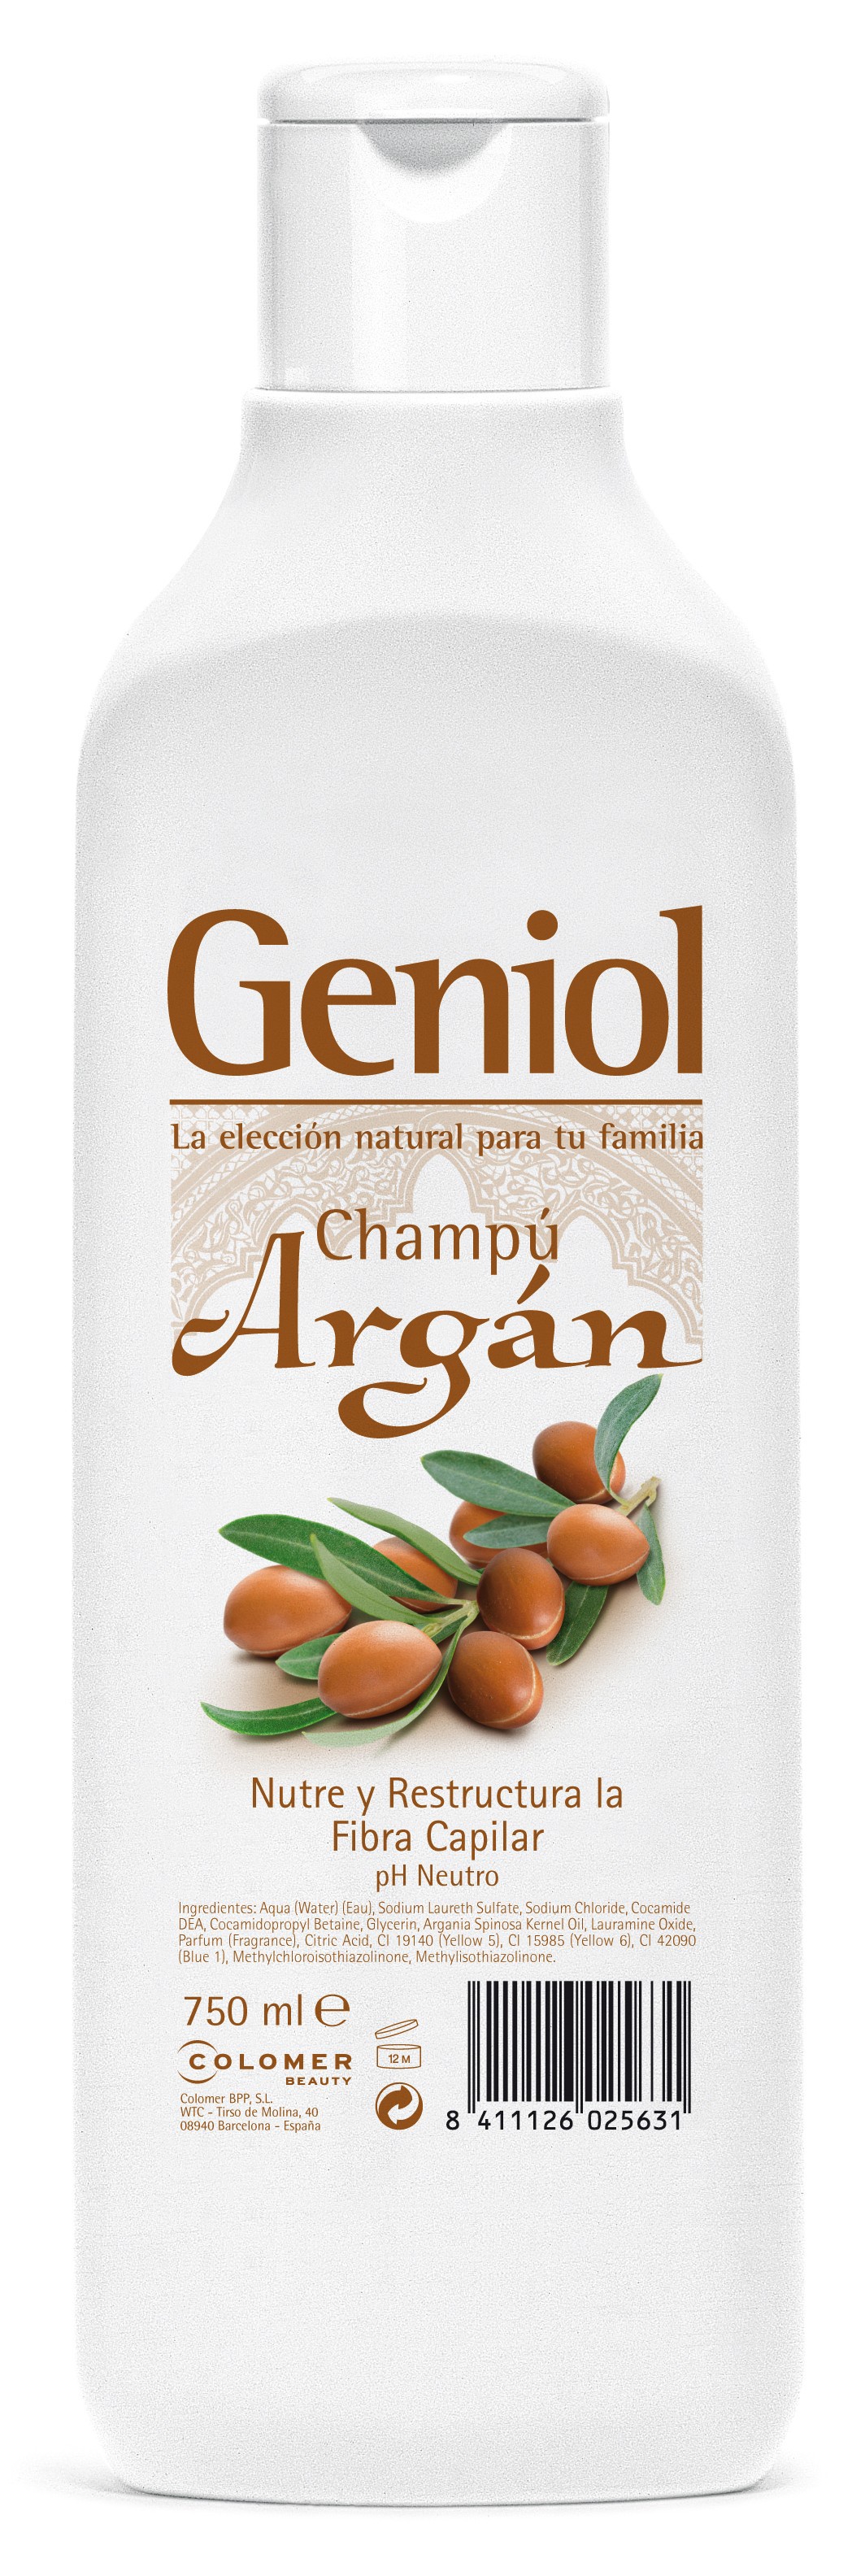 Geniol Shampoo Argan